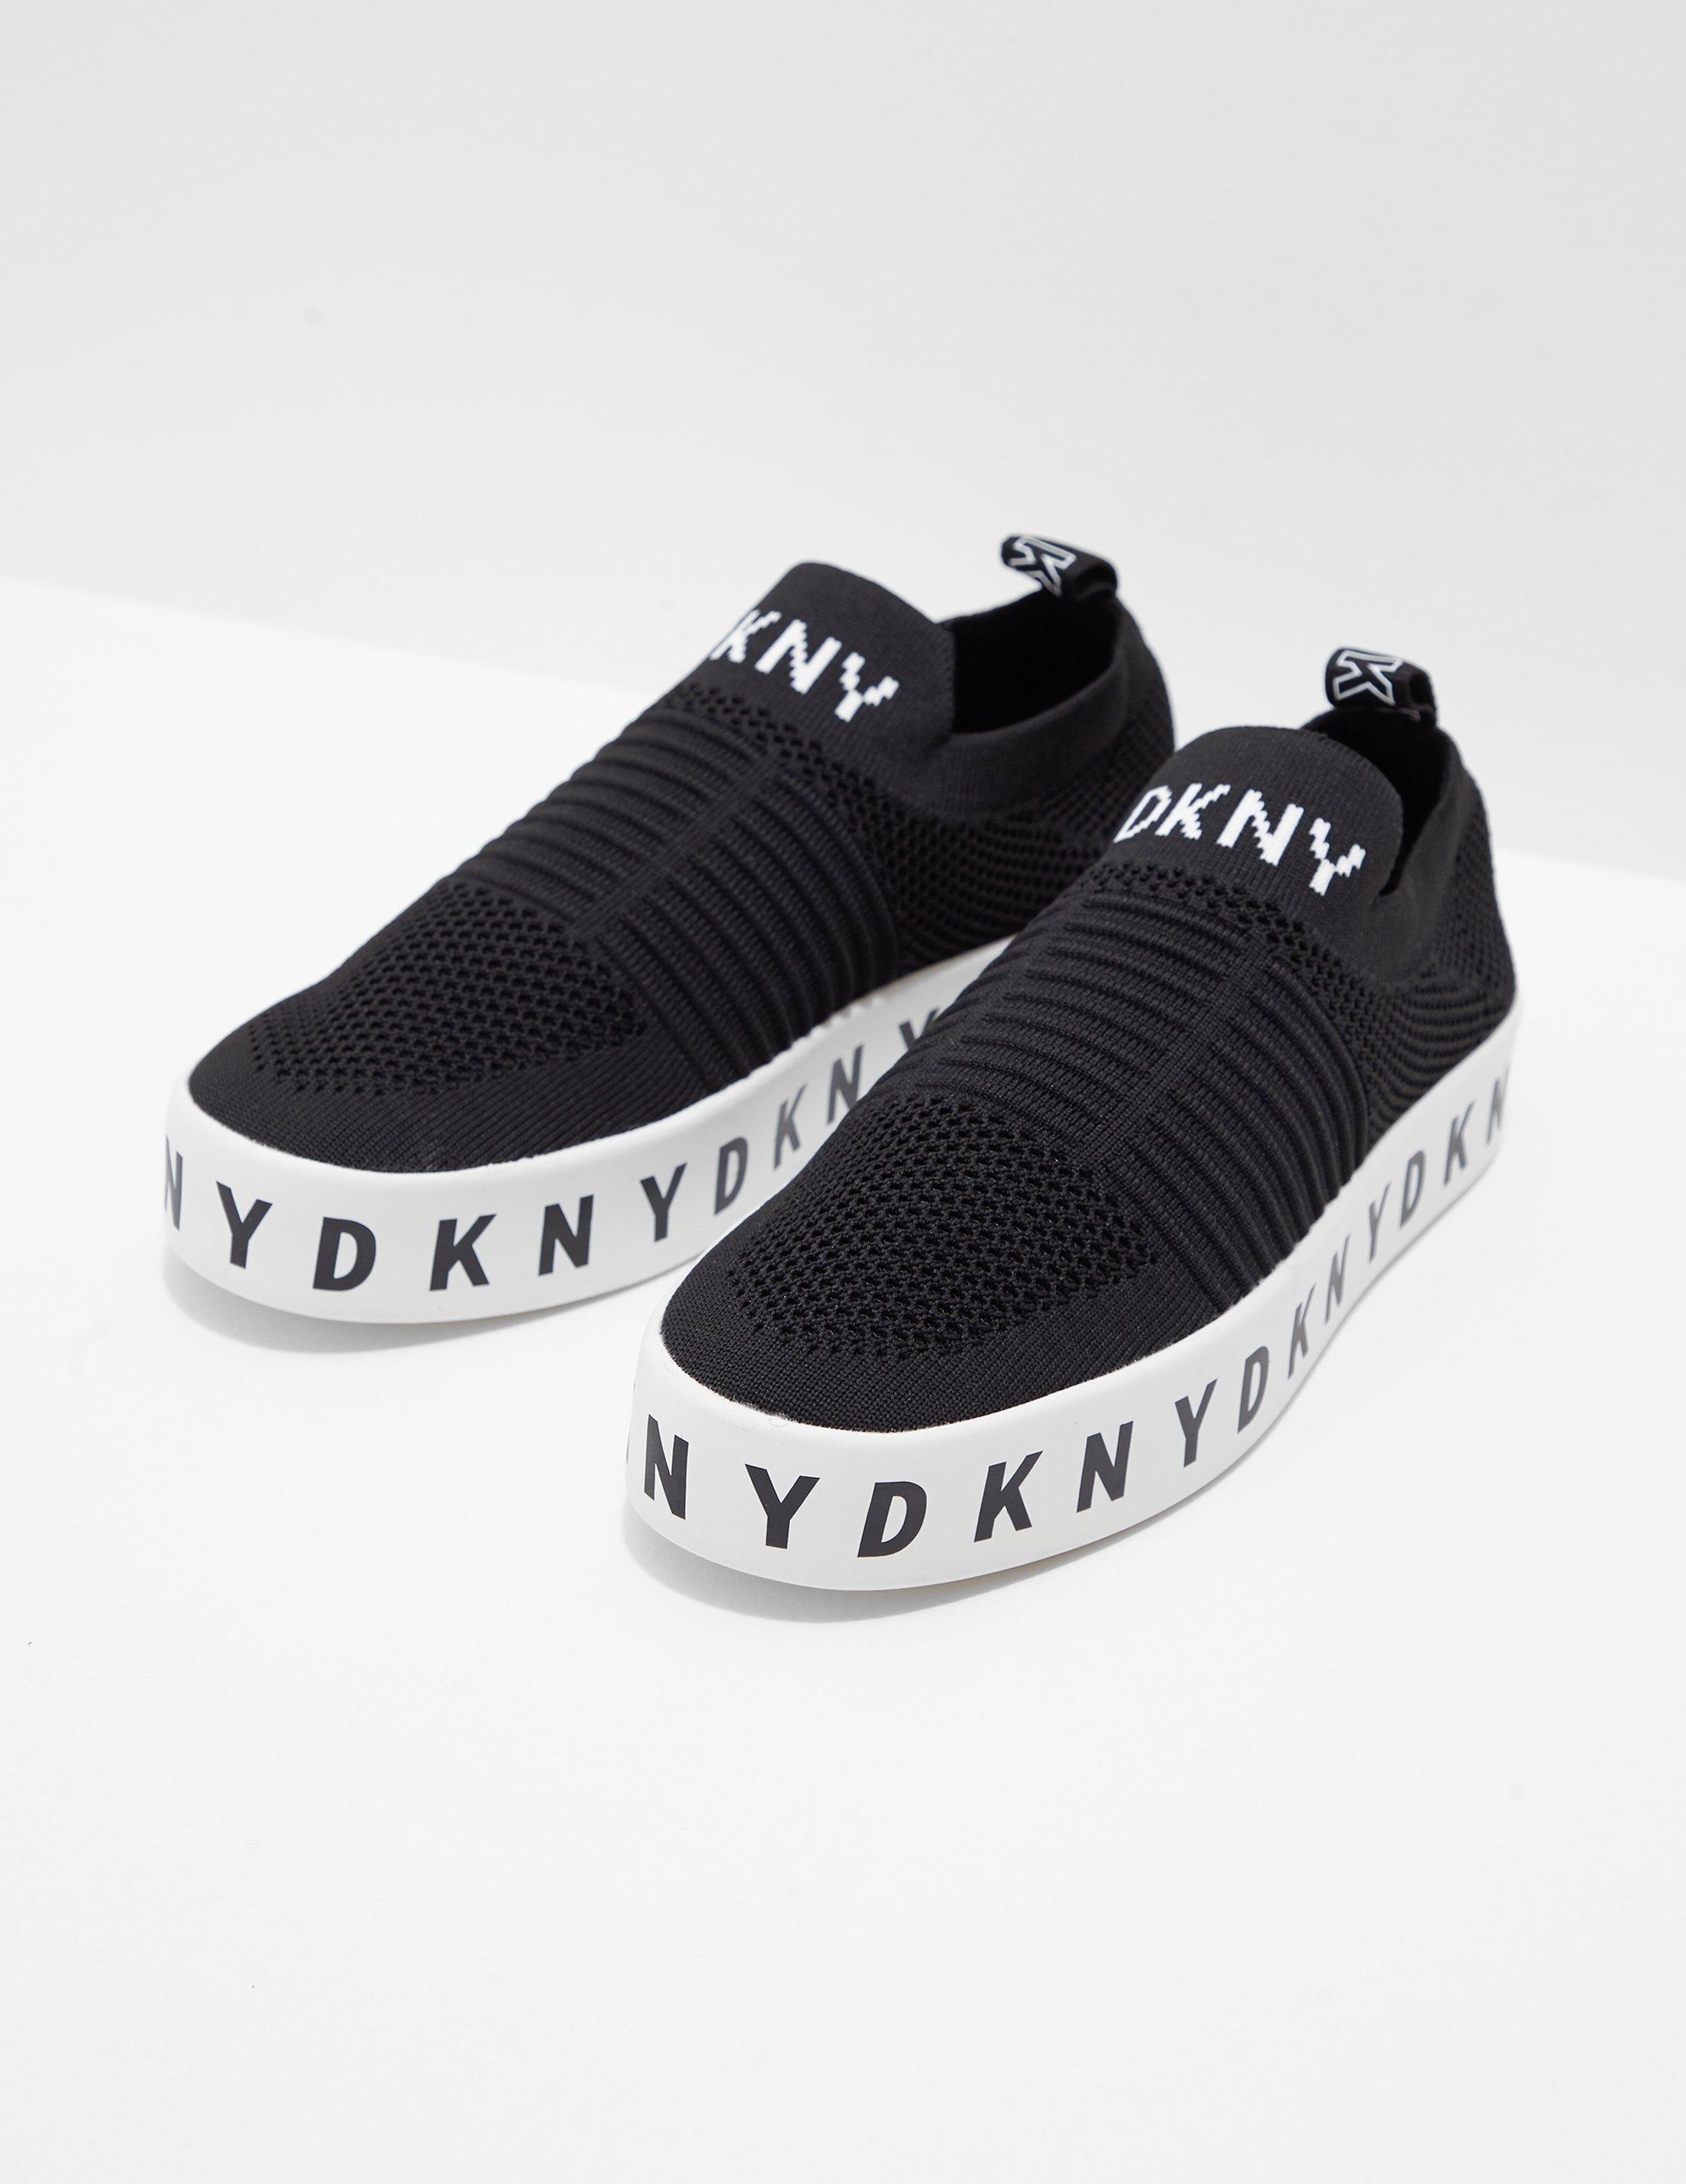 dkny black shoes wholesale d511d b31fc